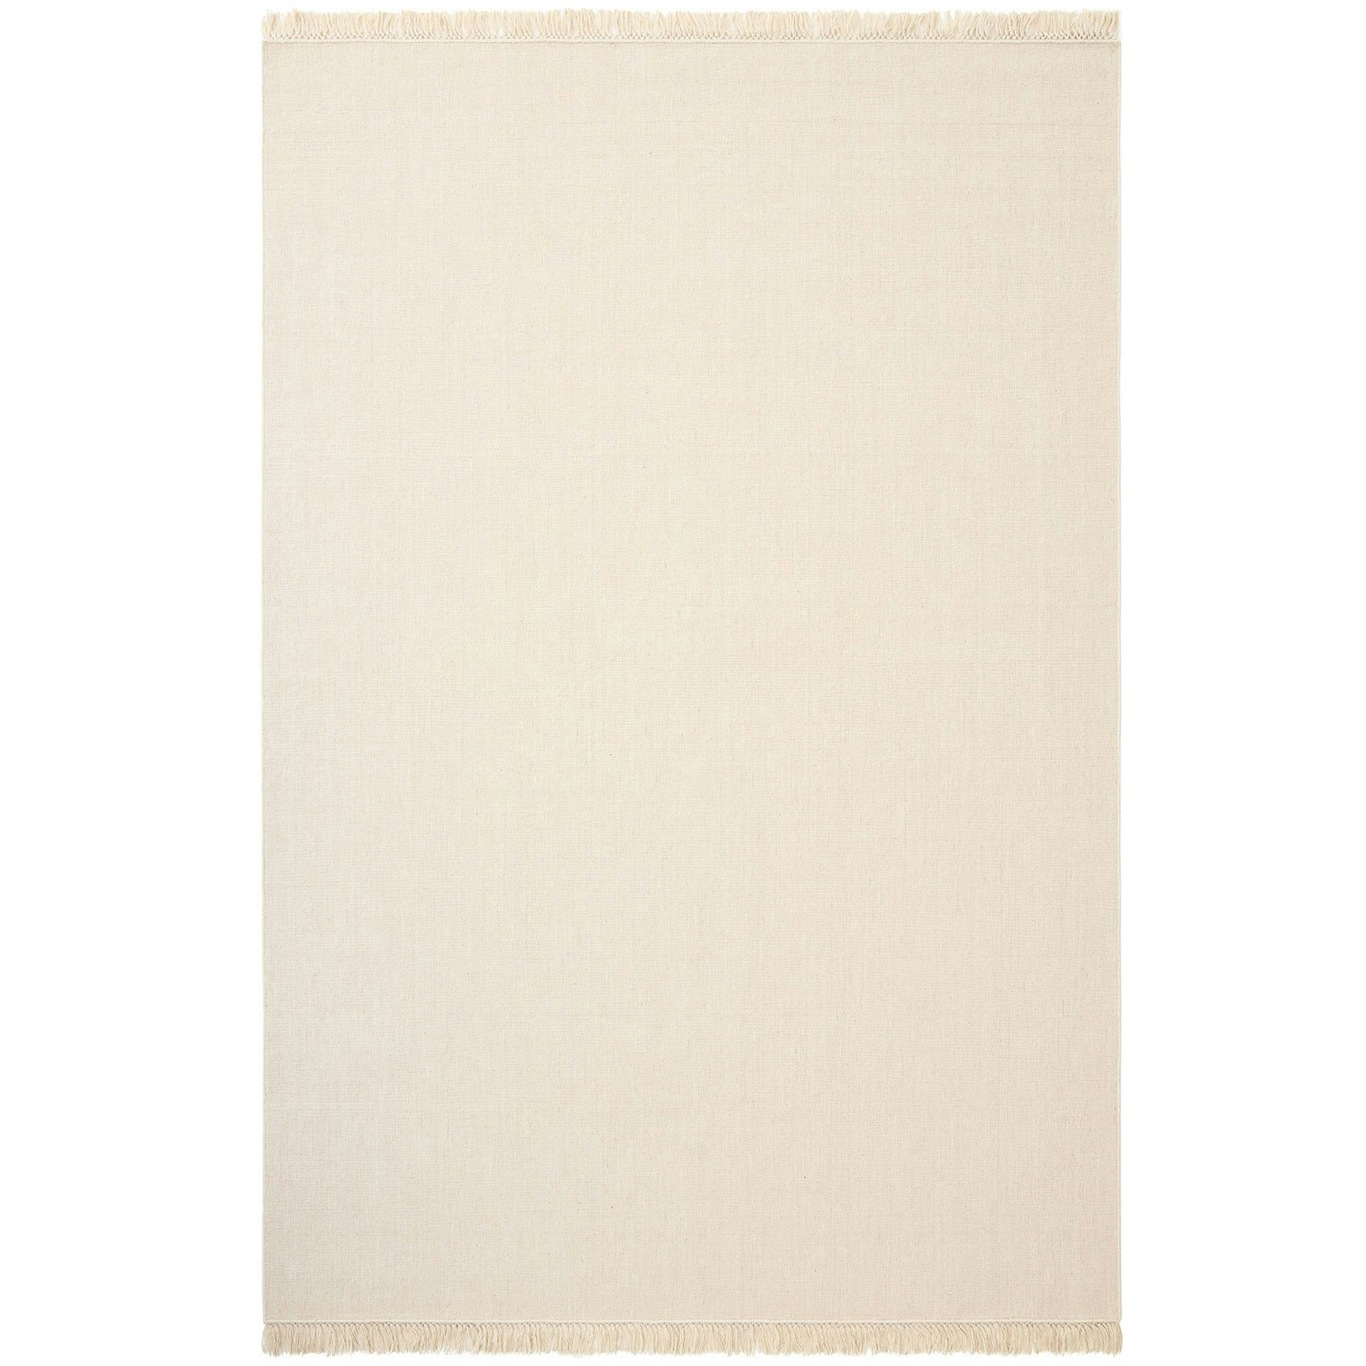 Nanda Teppe Off-white, 80x250 cm